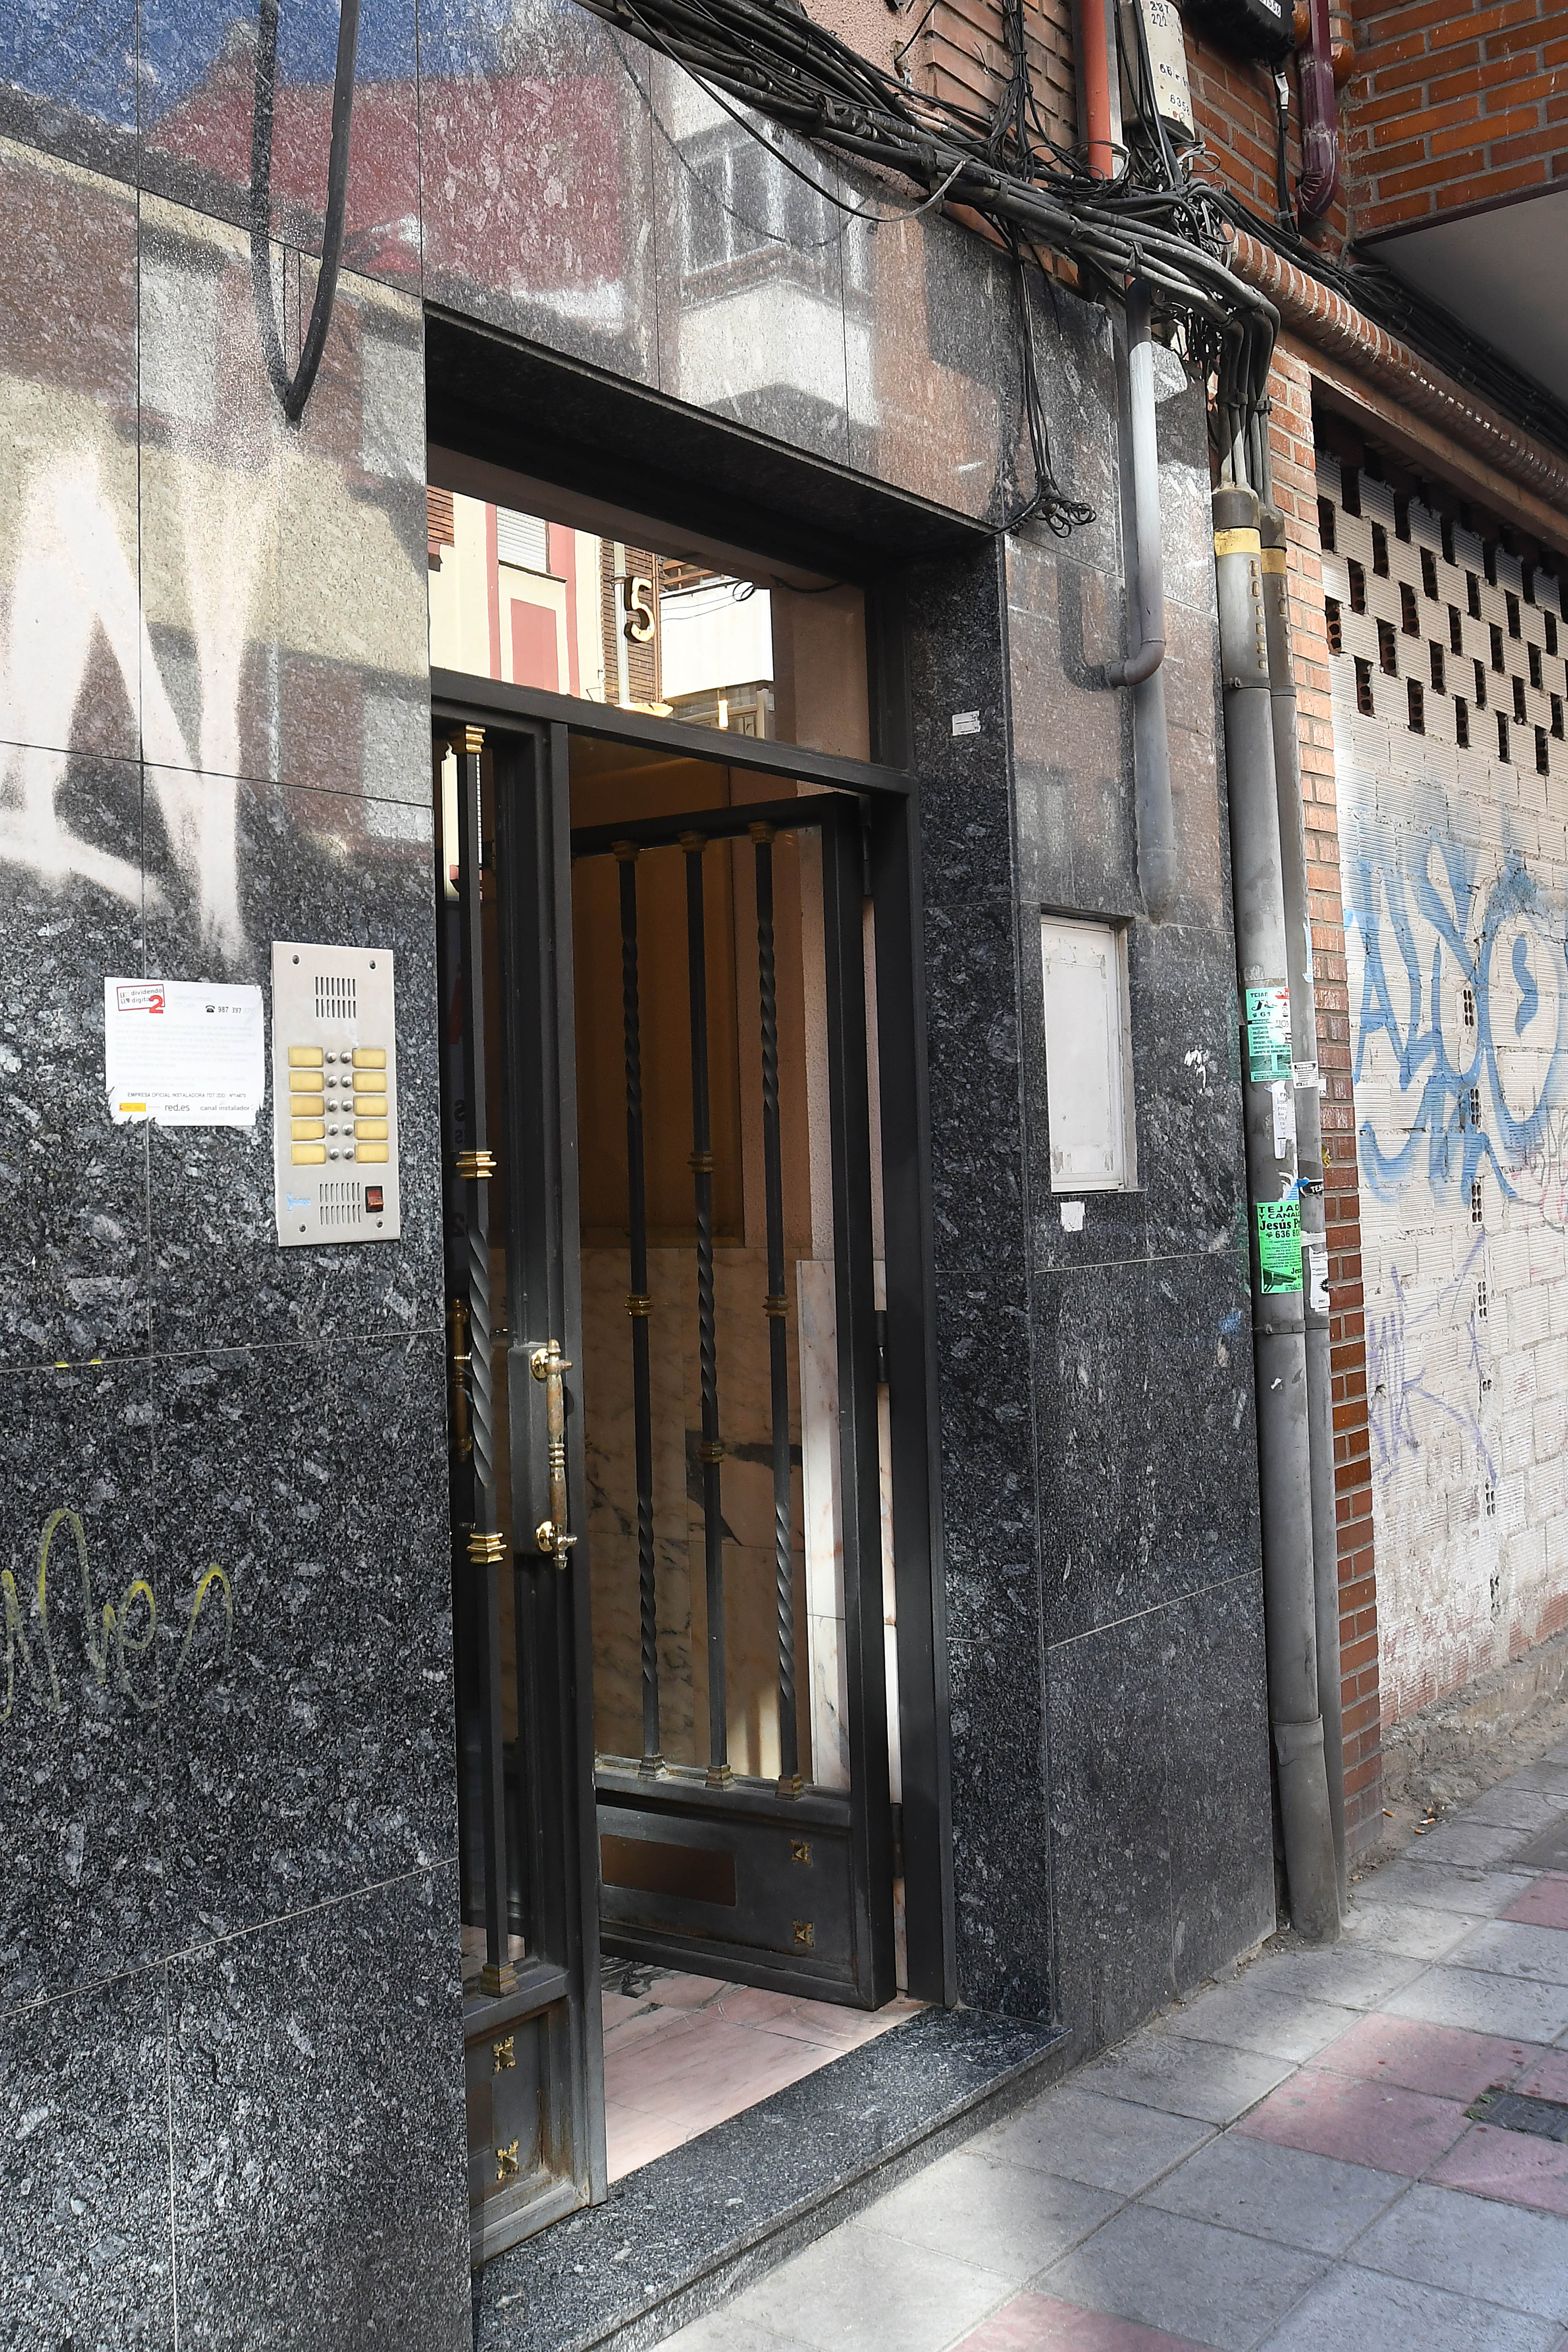 Portal del edificio de Obispo Almarcha en el que la mujer fue asesinada. | Ical